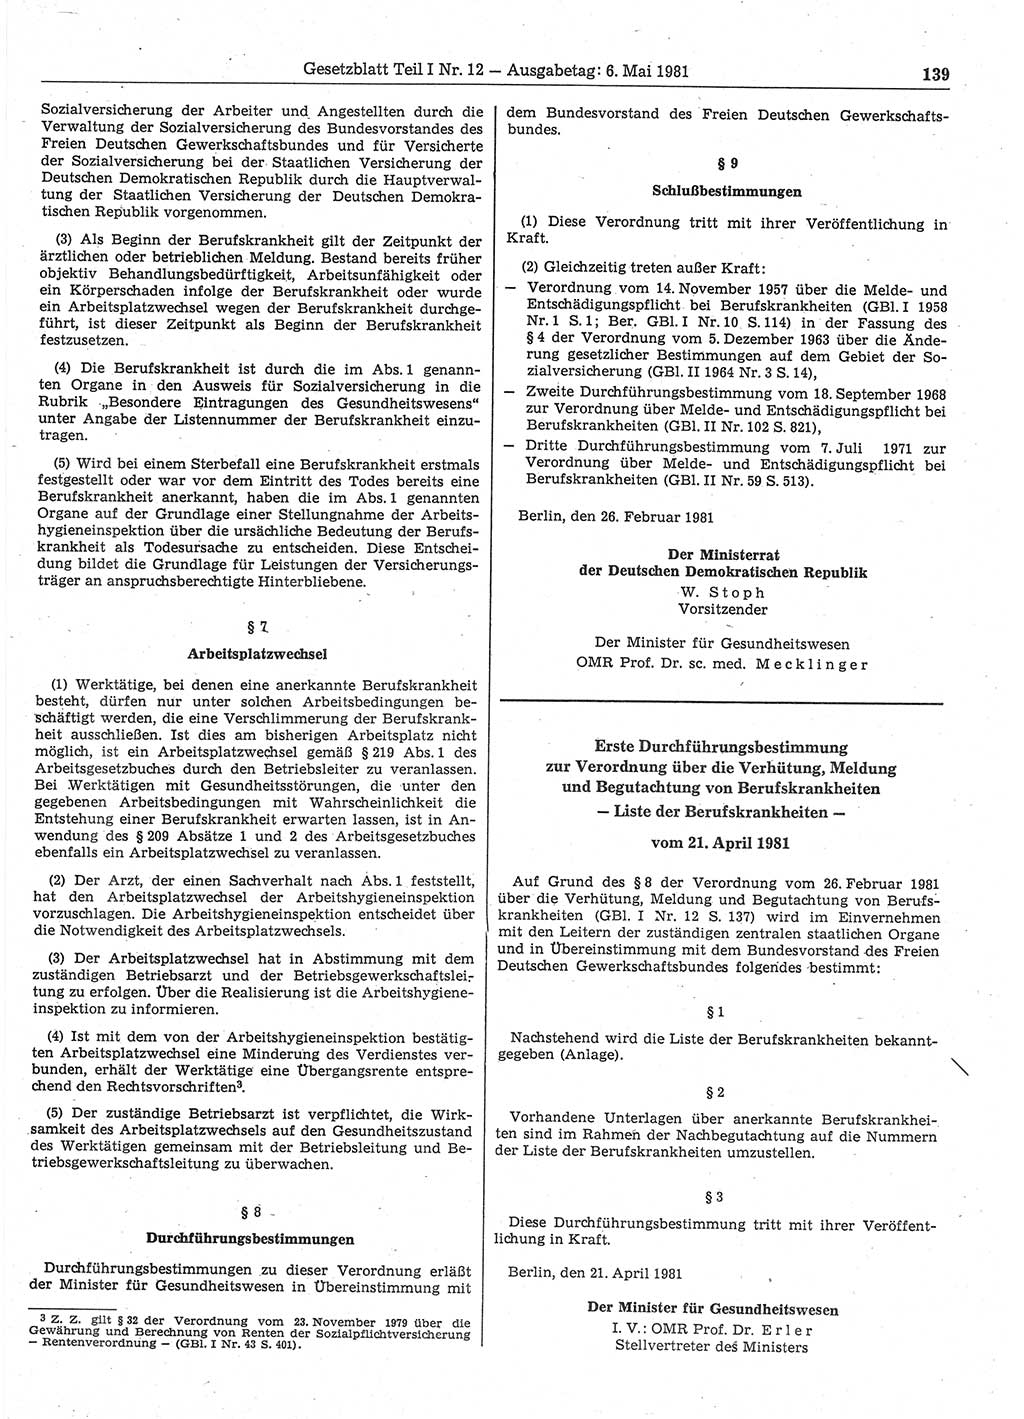 Gesetzblatt (GBl.) der Deutschen Demokratischen Republik (DDR) Teil Ⅰ 1981, Seite 139 (GBl. DDR Ⅰ 1981, S. 139)